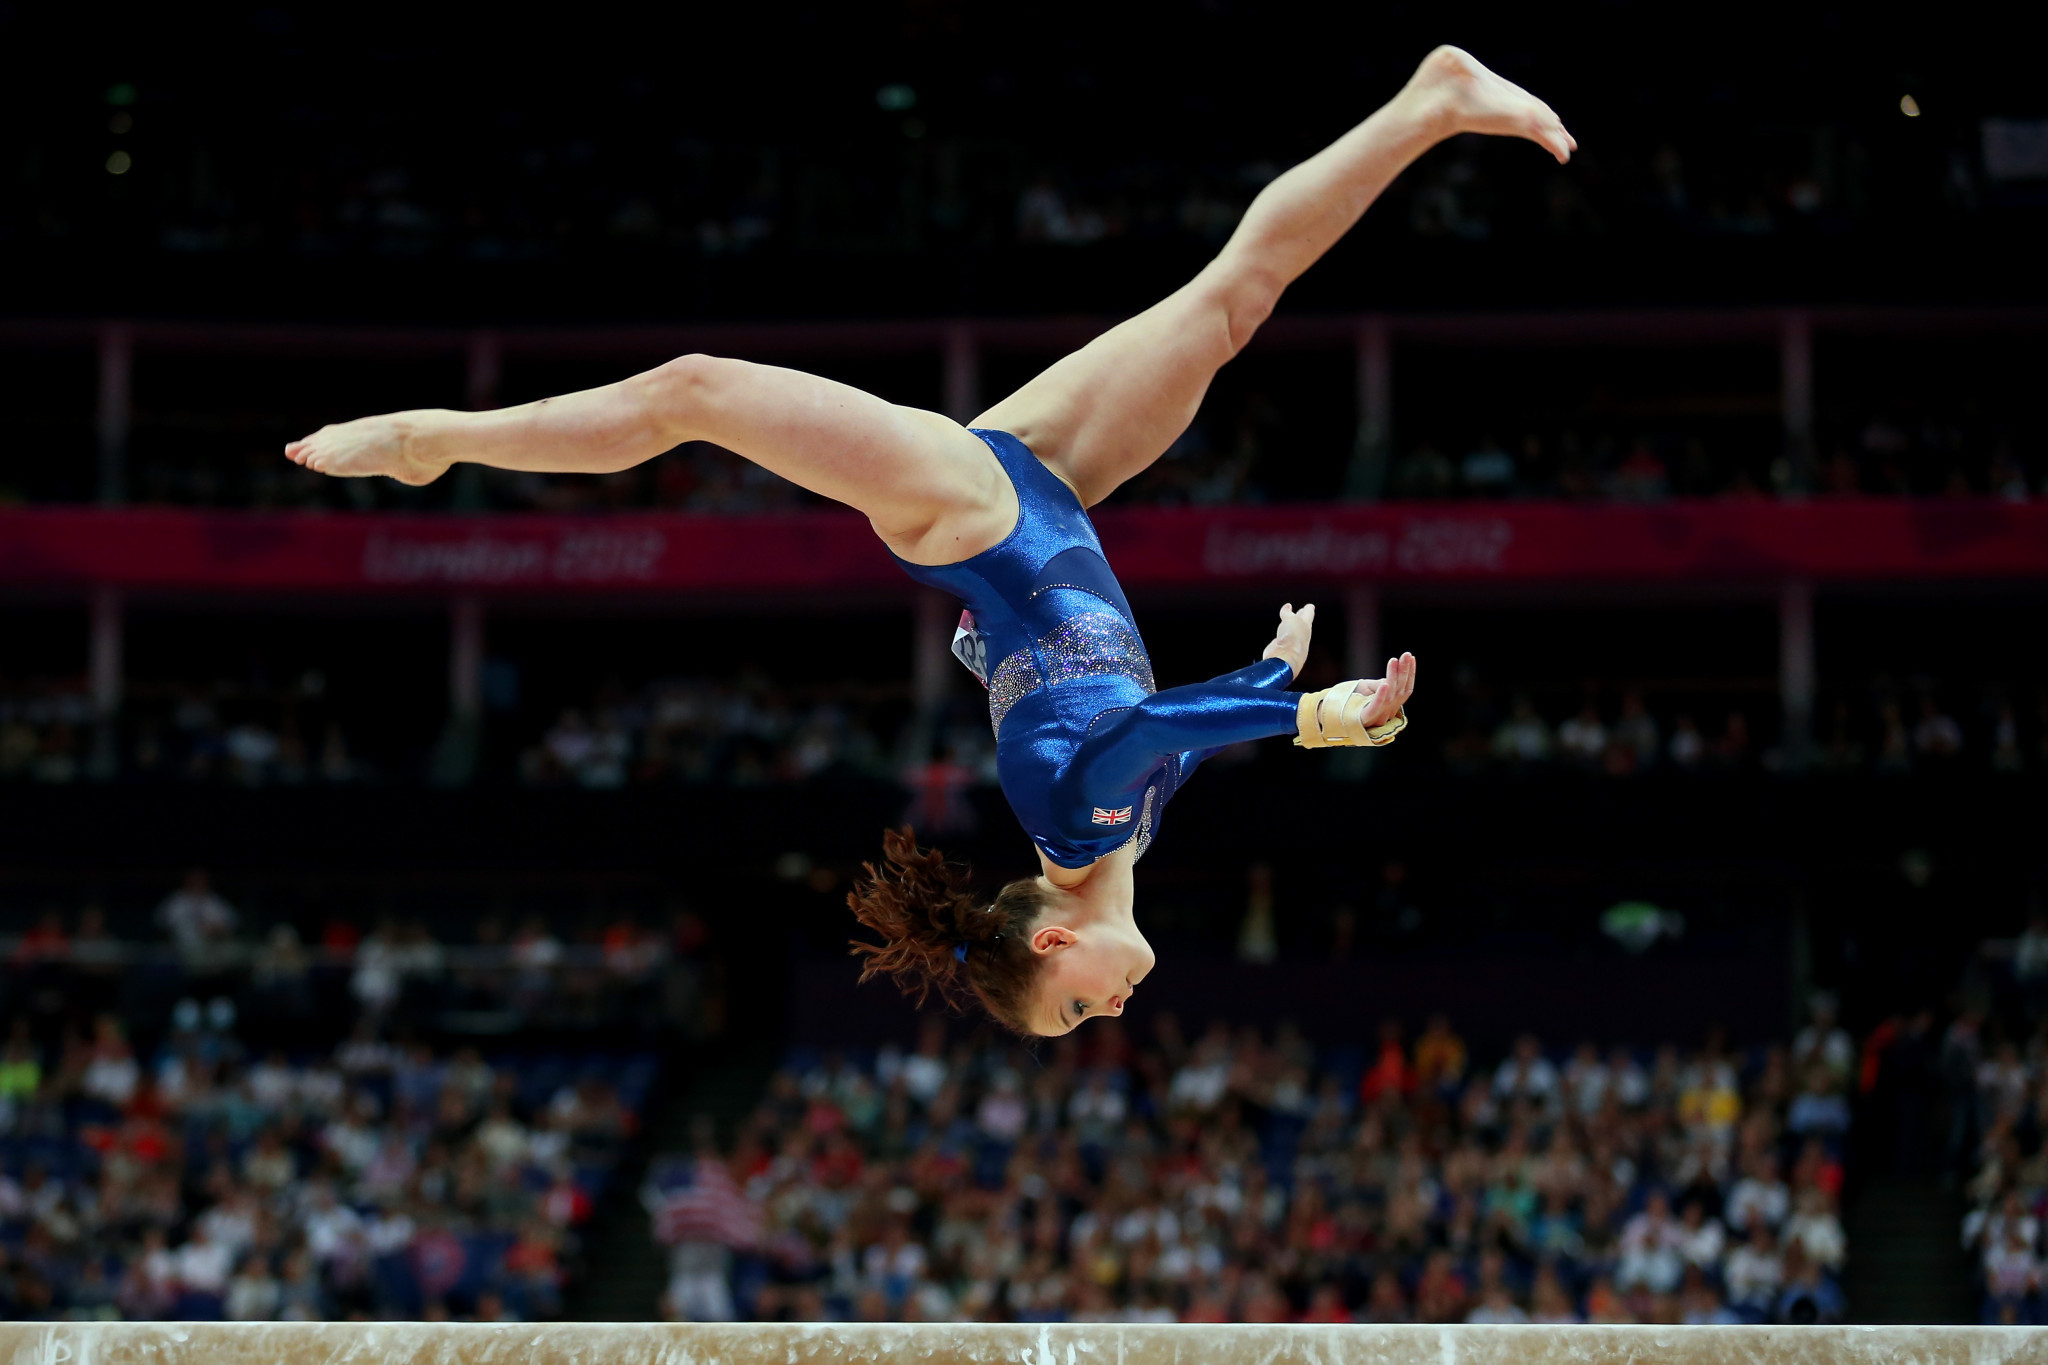 Ehemalige Turner erheben rechtliche Schritte gegen British Gymnastics wegen...